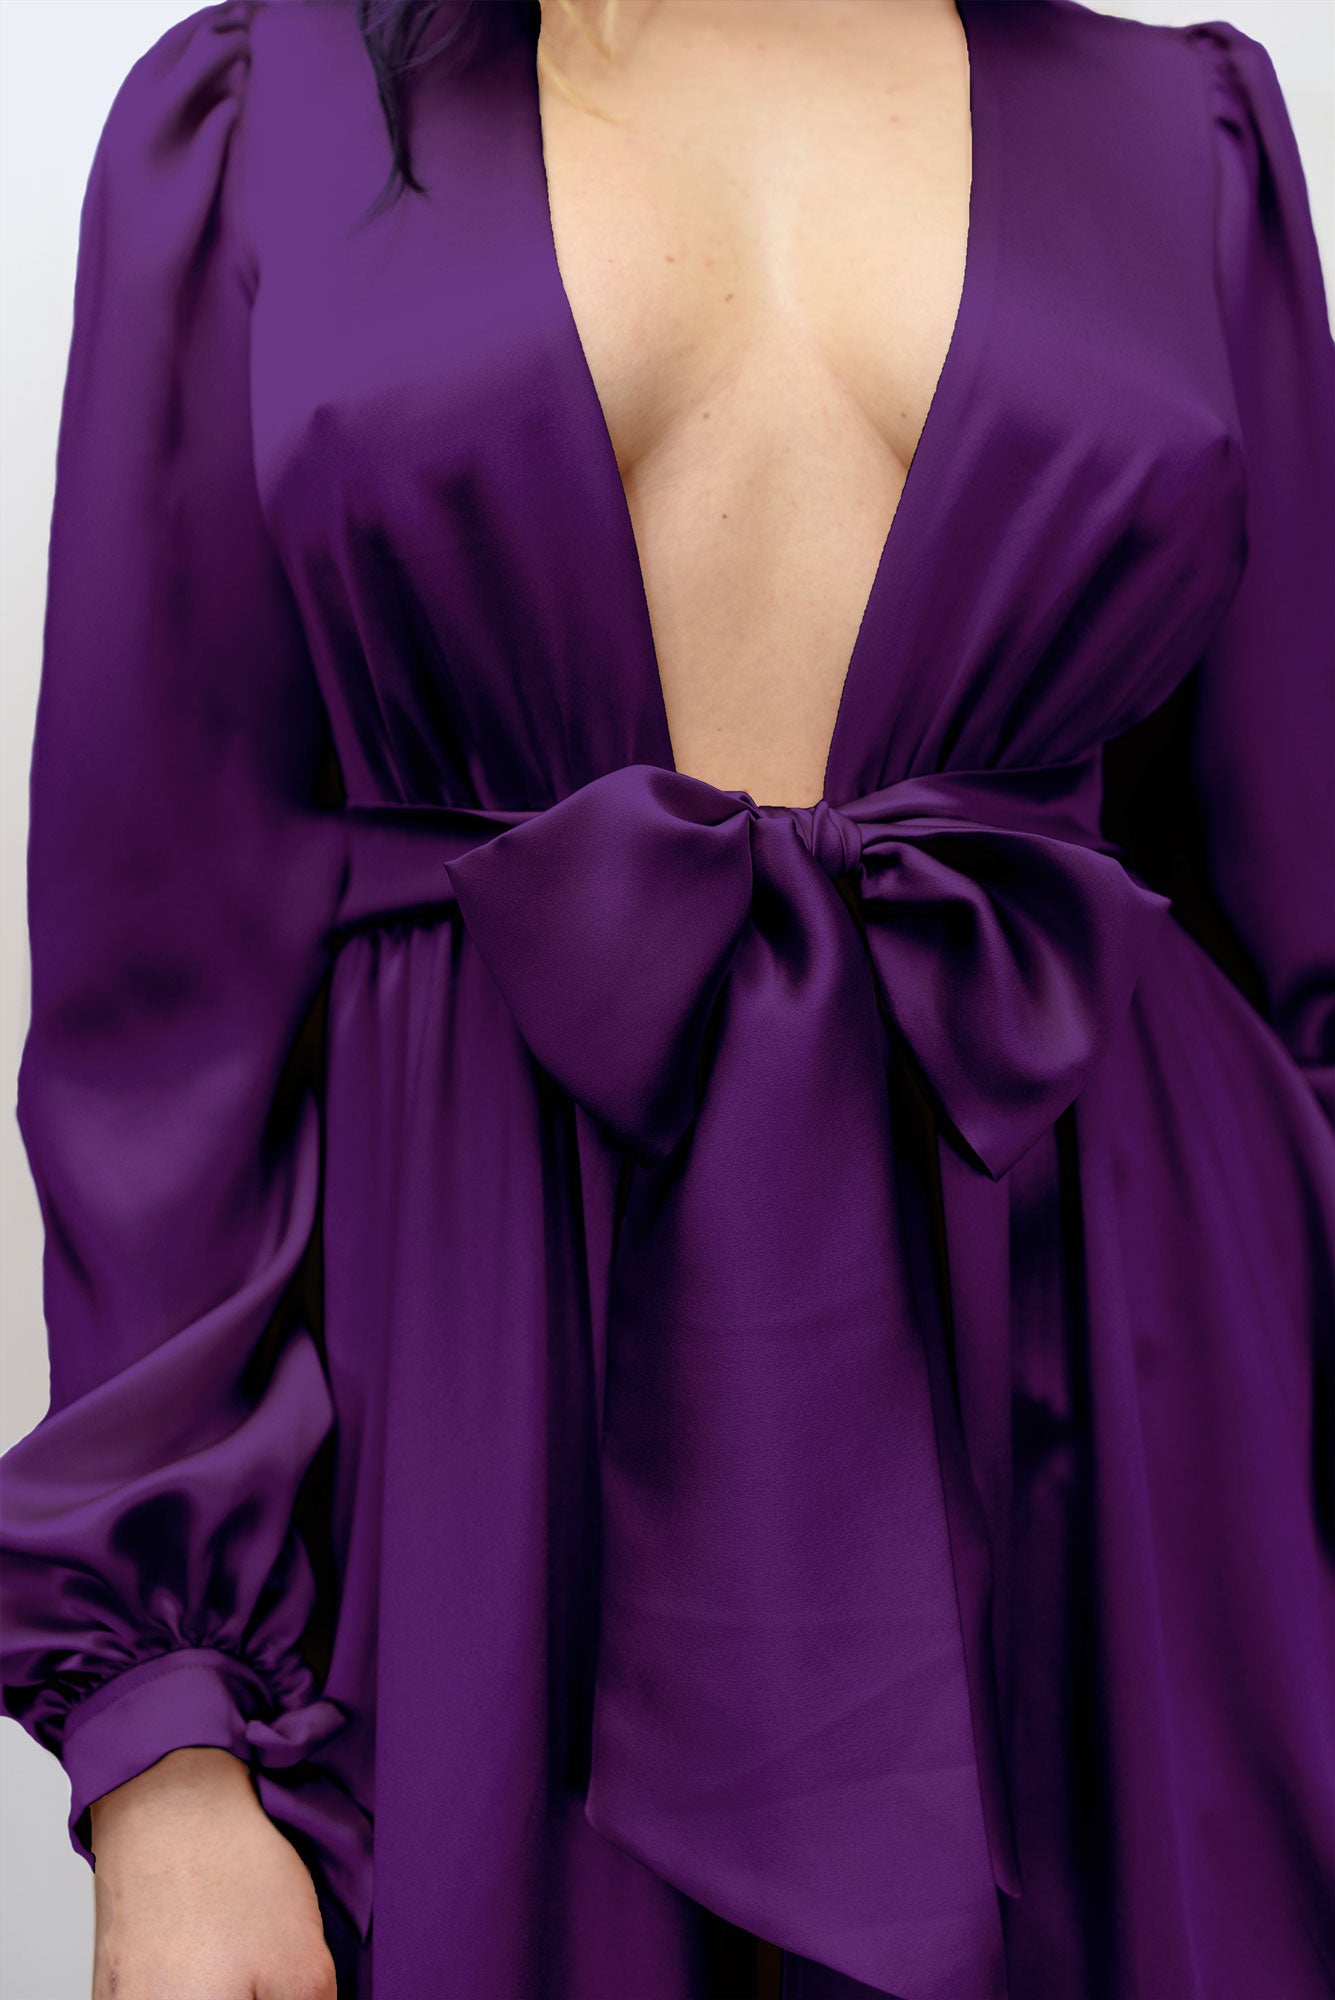 Langley Robe in Periwinkle  Luxurious Custom Purple Silk Robes